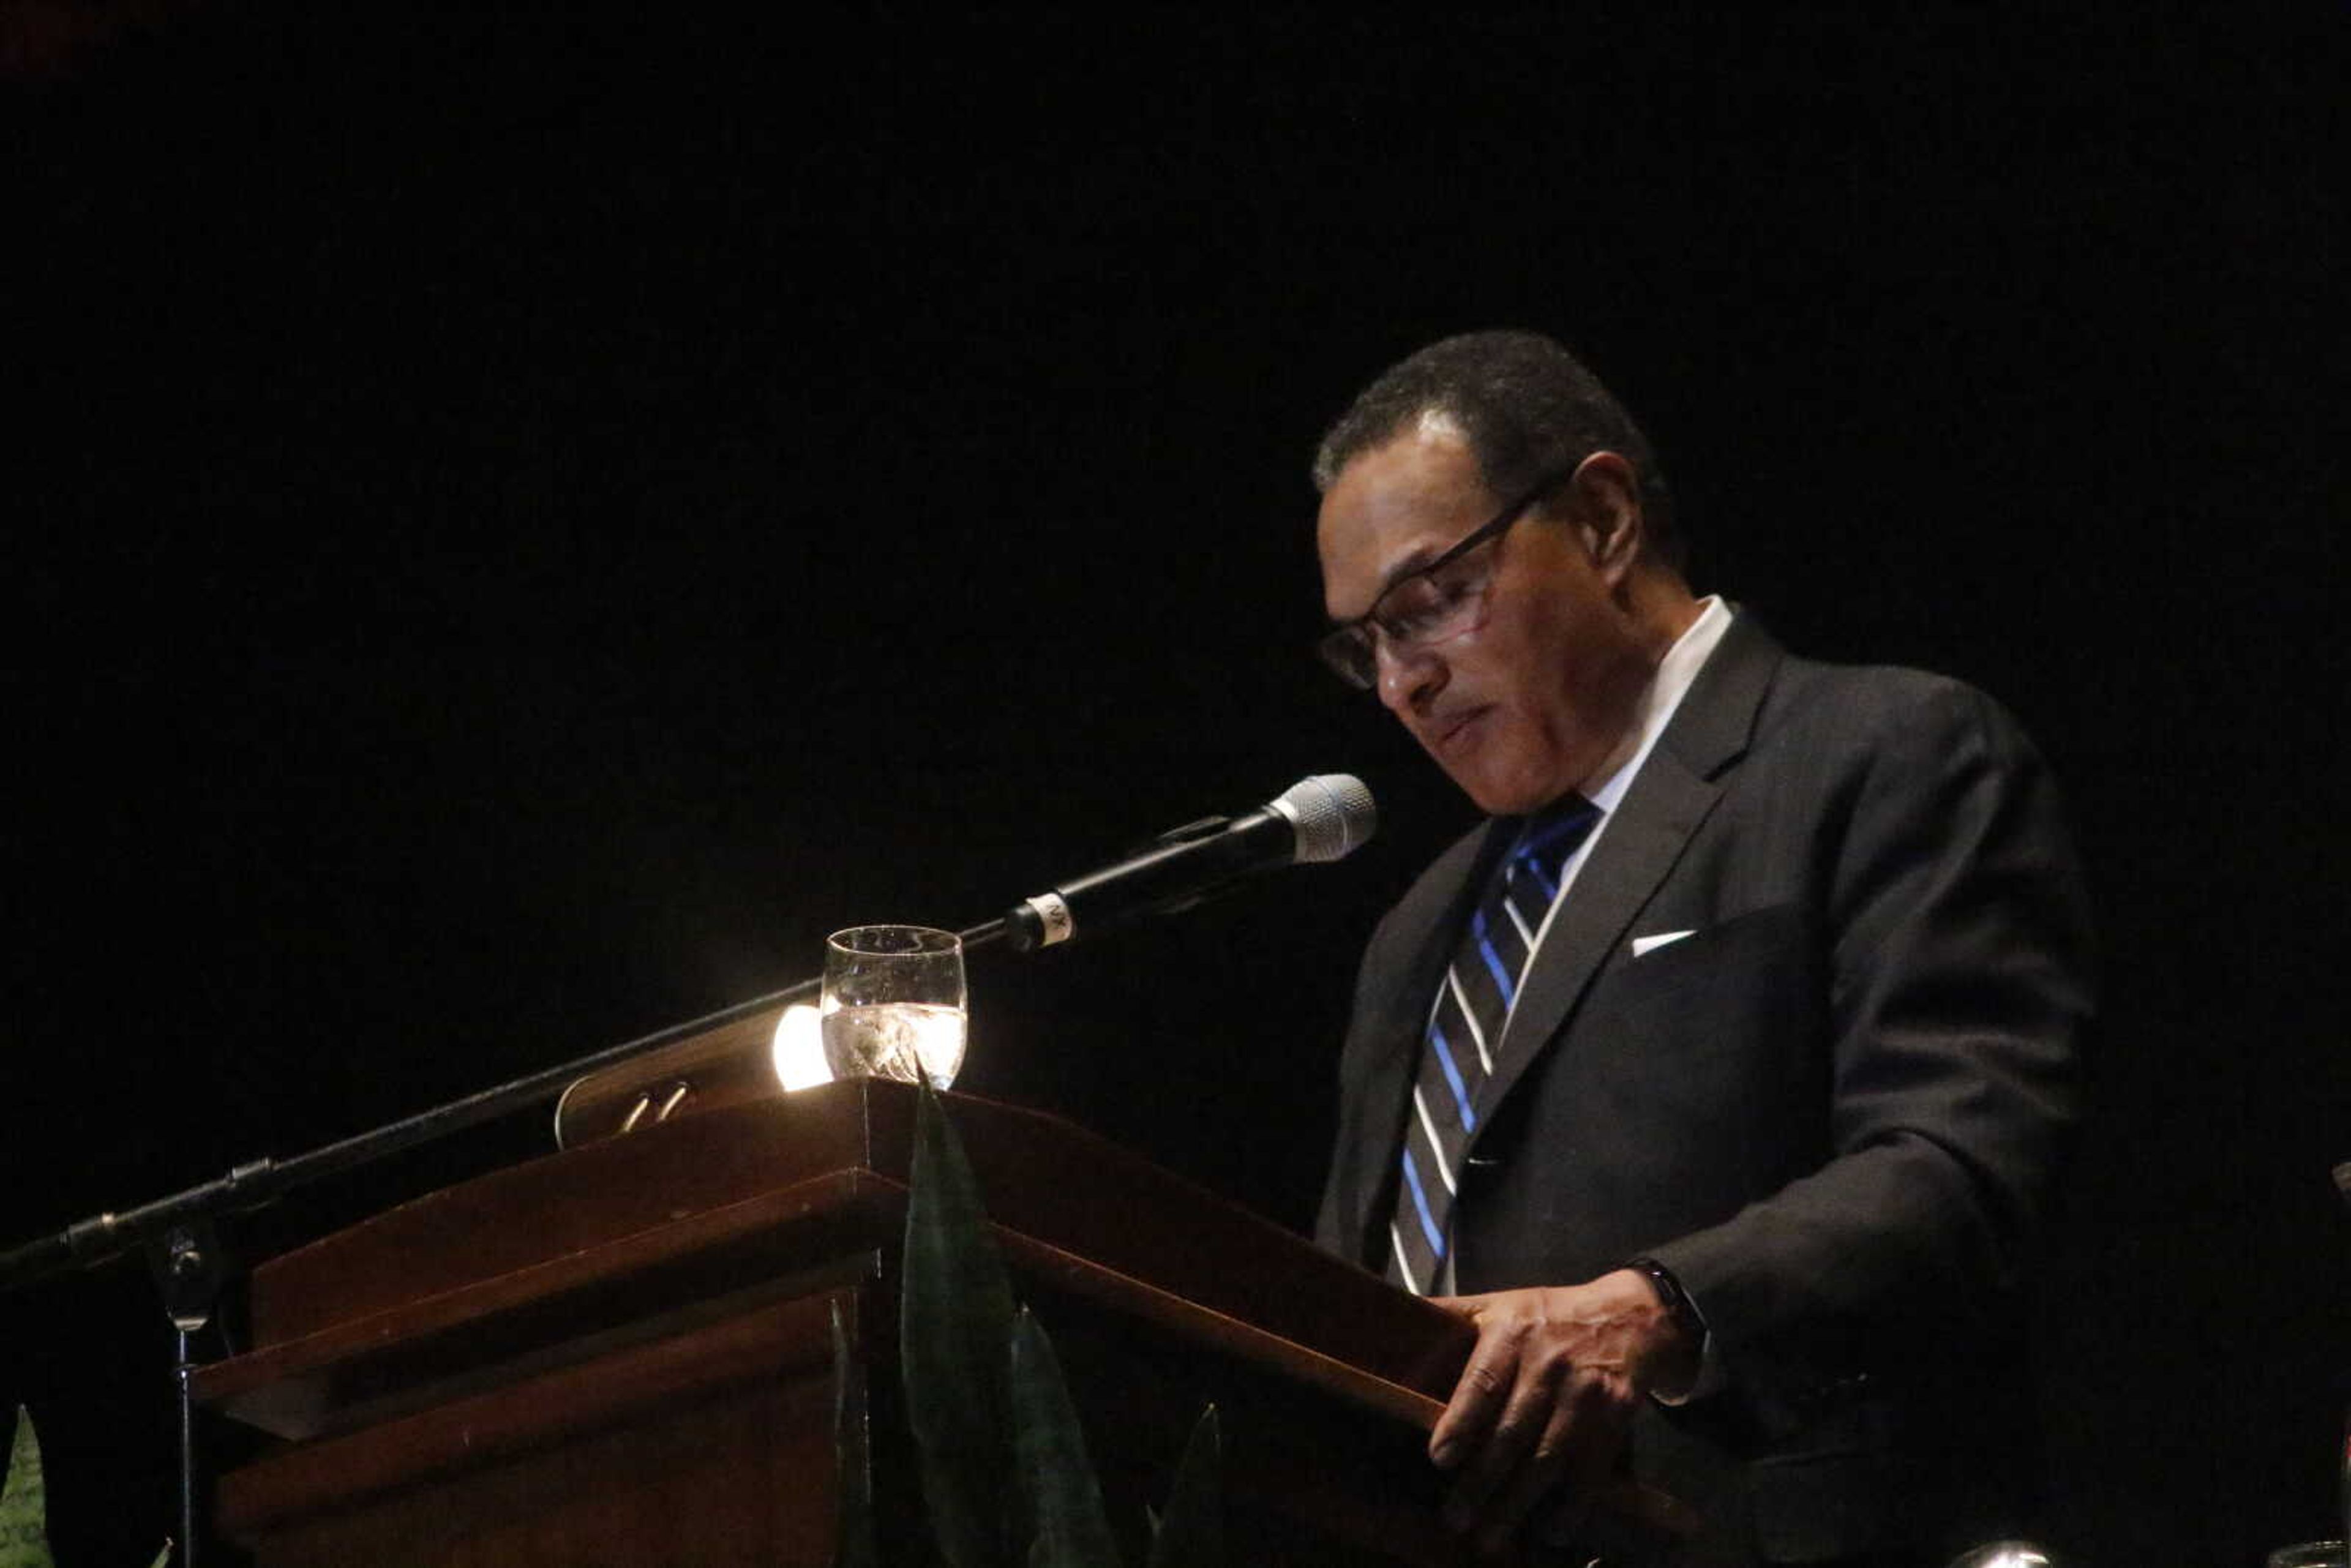 MLK Celebration Dinner speaker emphasizes education, civil rights